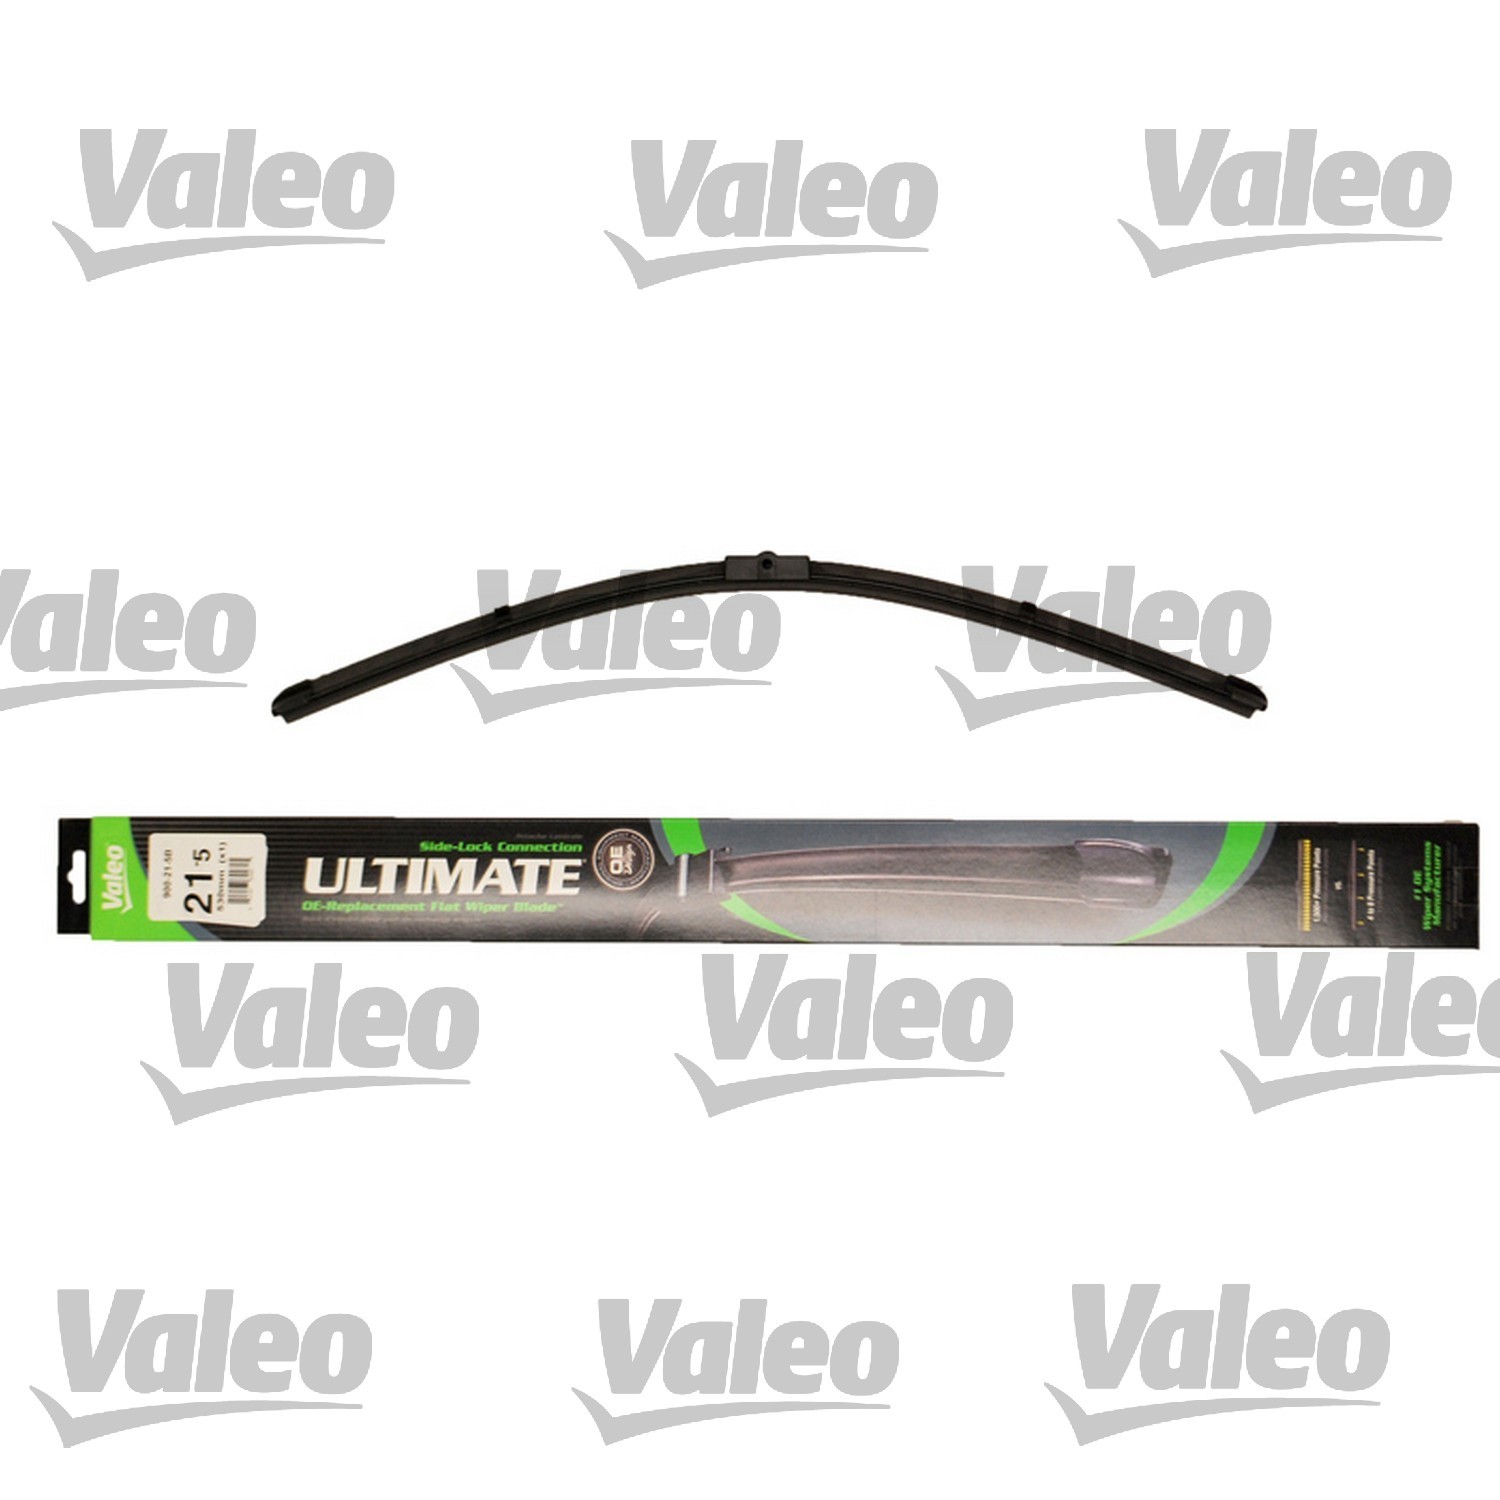 VALEO - Ultimate Wiper Blade Refill - VEO 900-21-5B